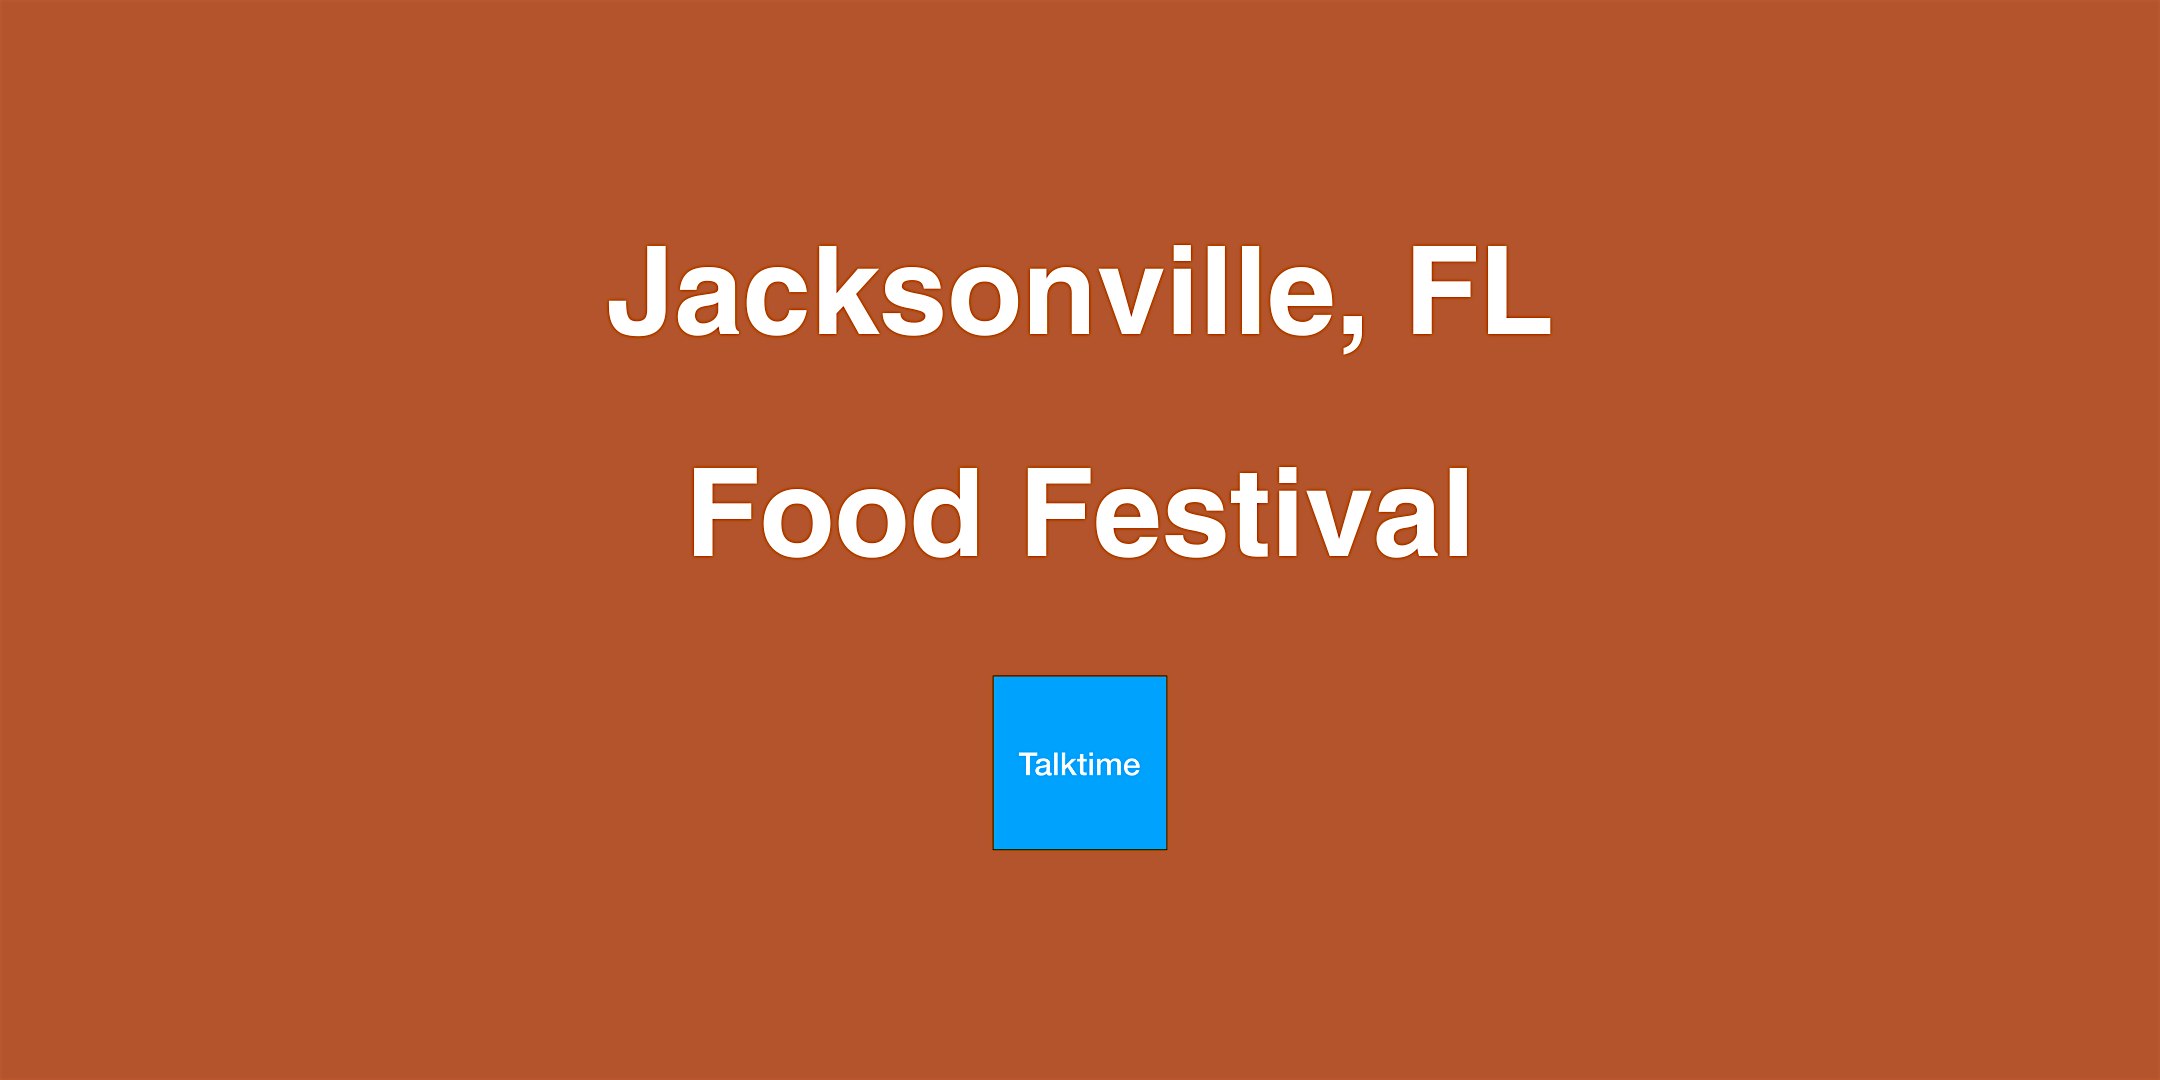 Food Festival - Jacksonville